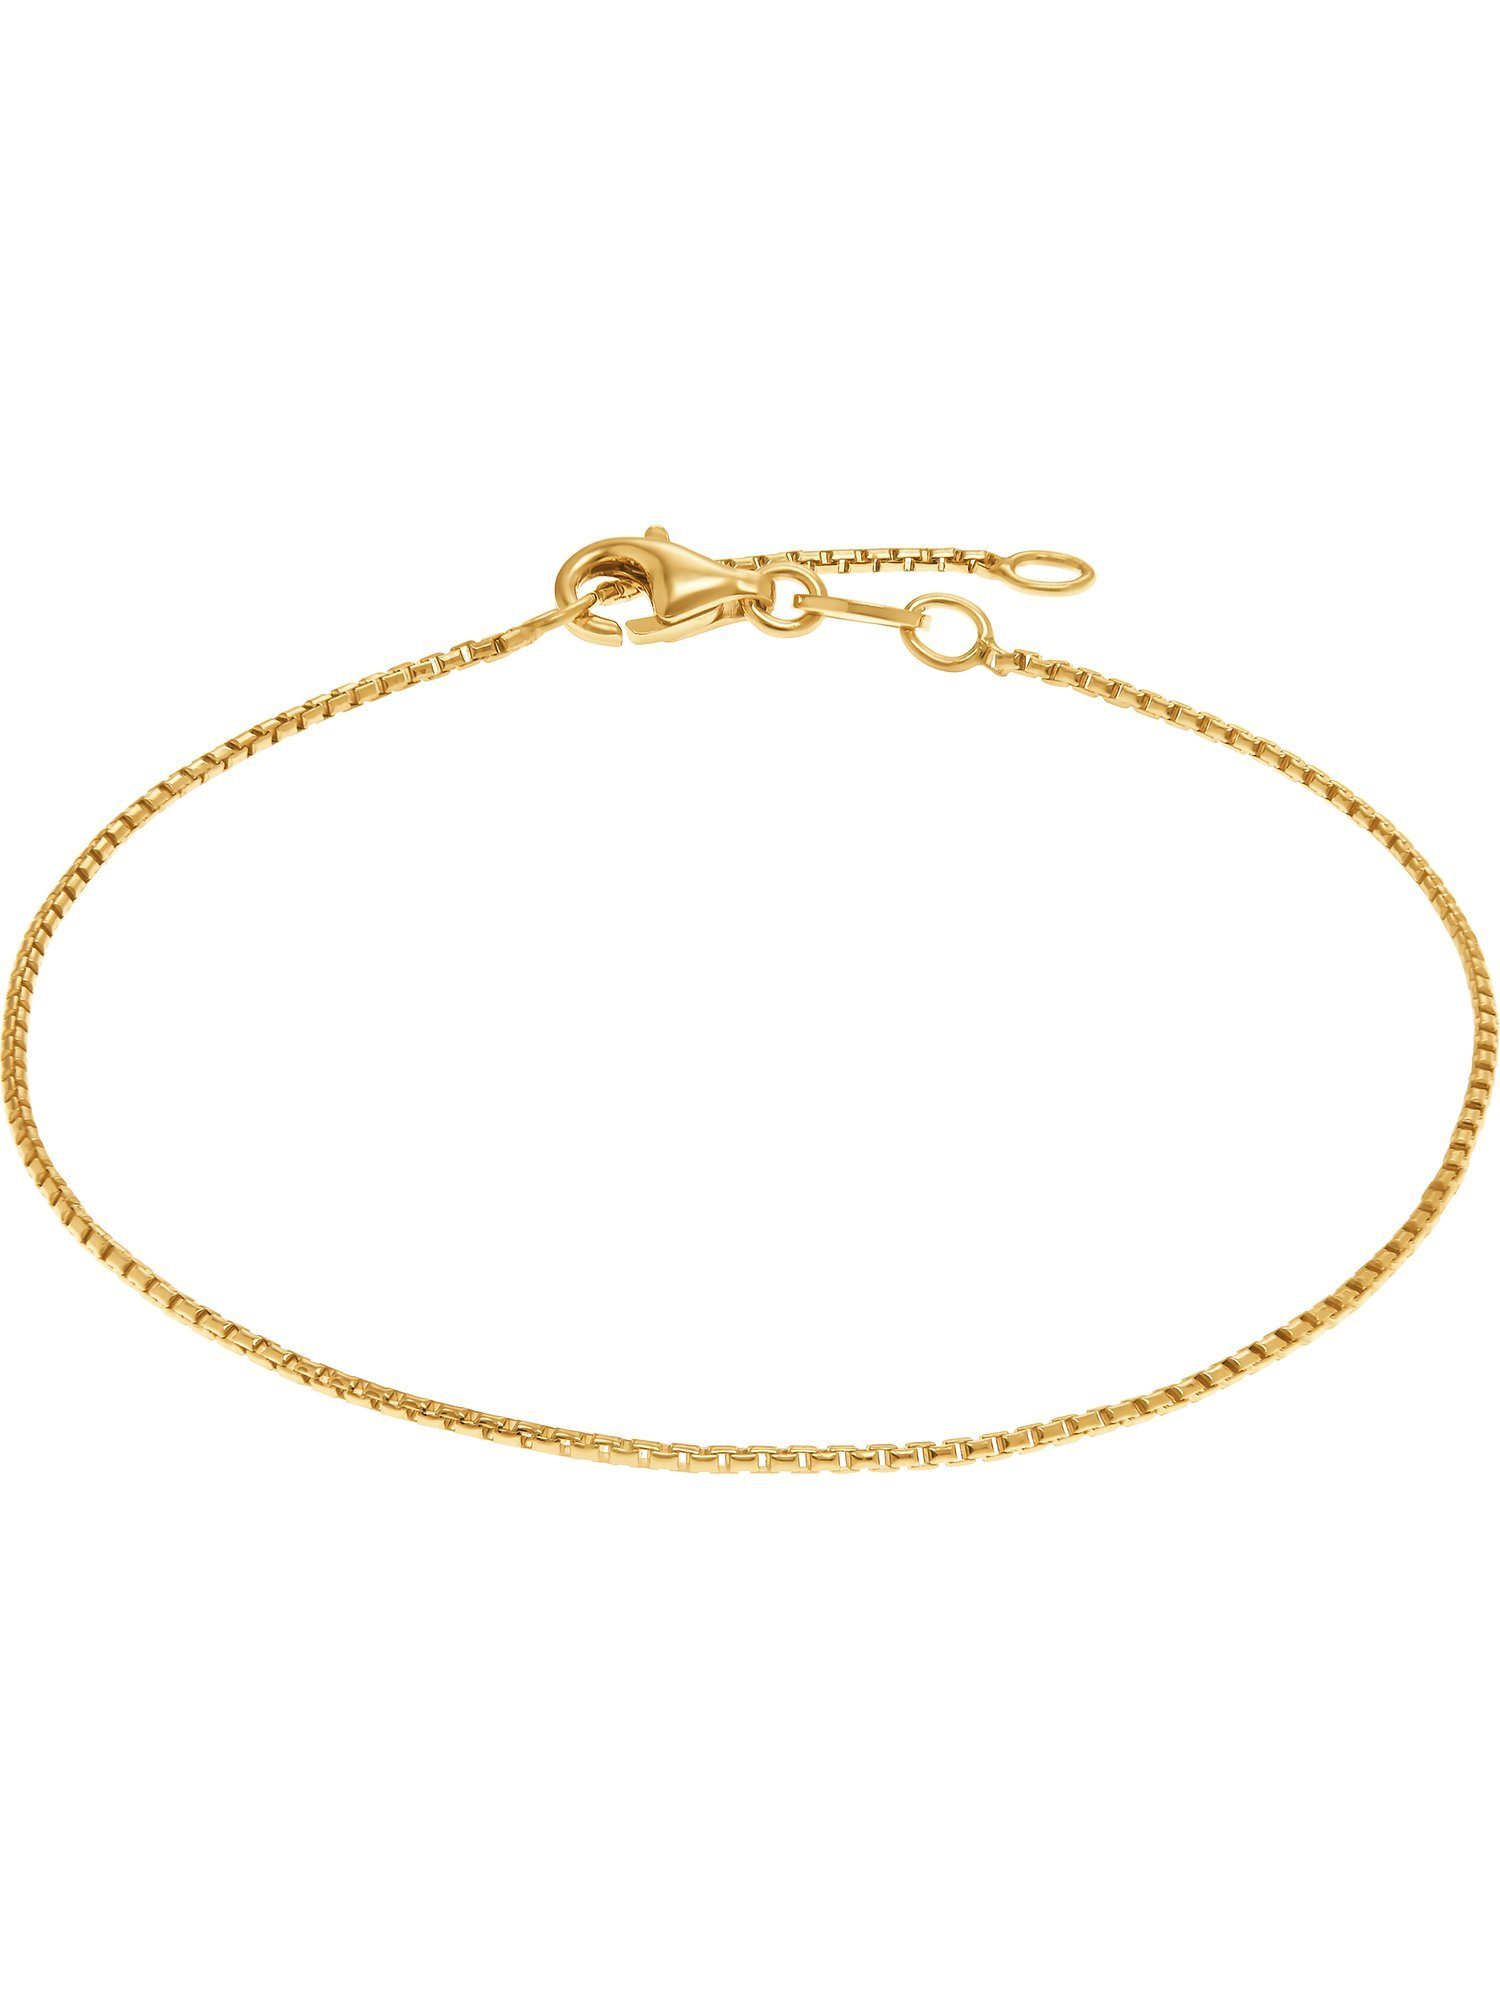 925er gelbgold Damen-Armband Silber, FAVS Modern Silberarmband FAVS